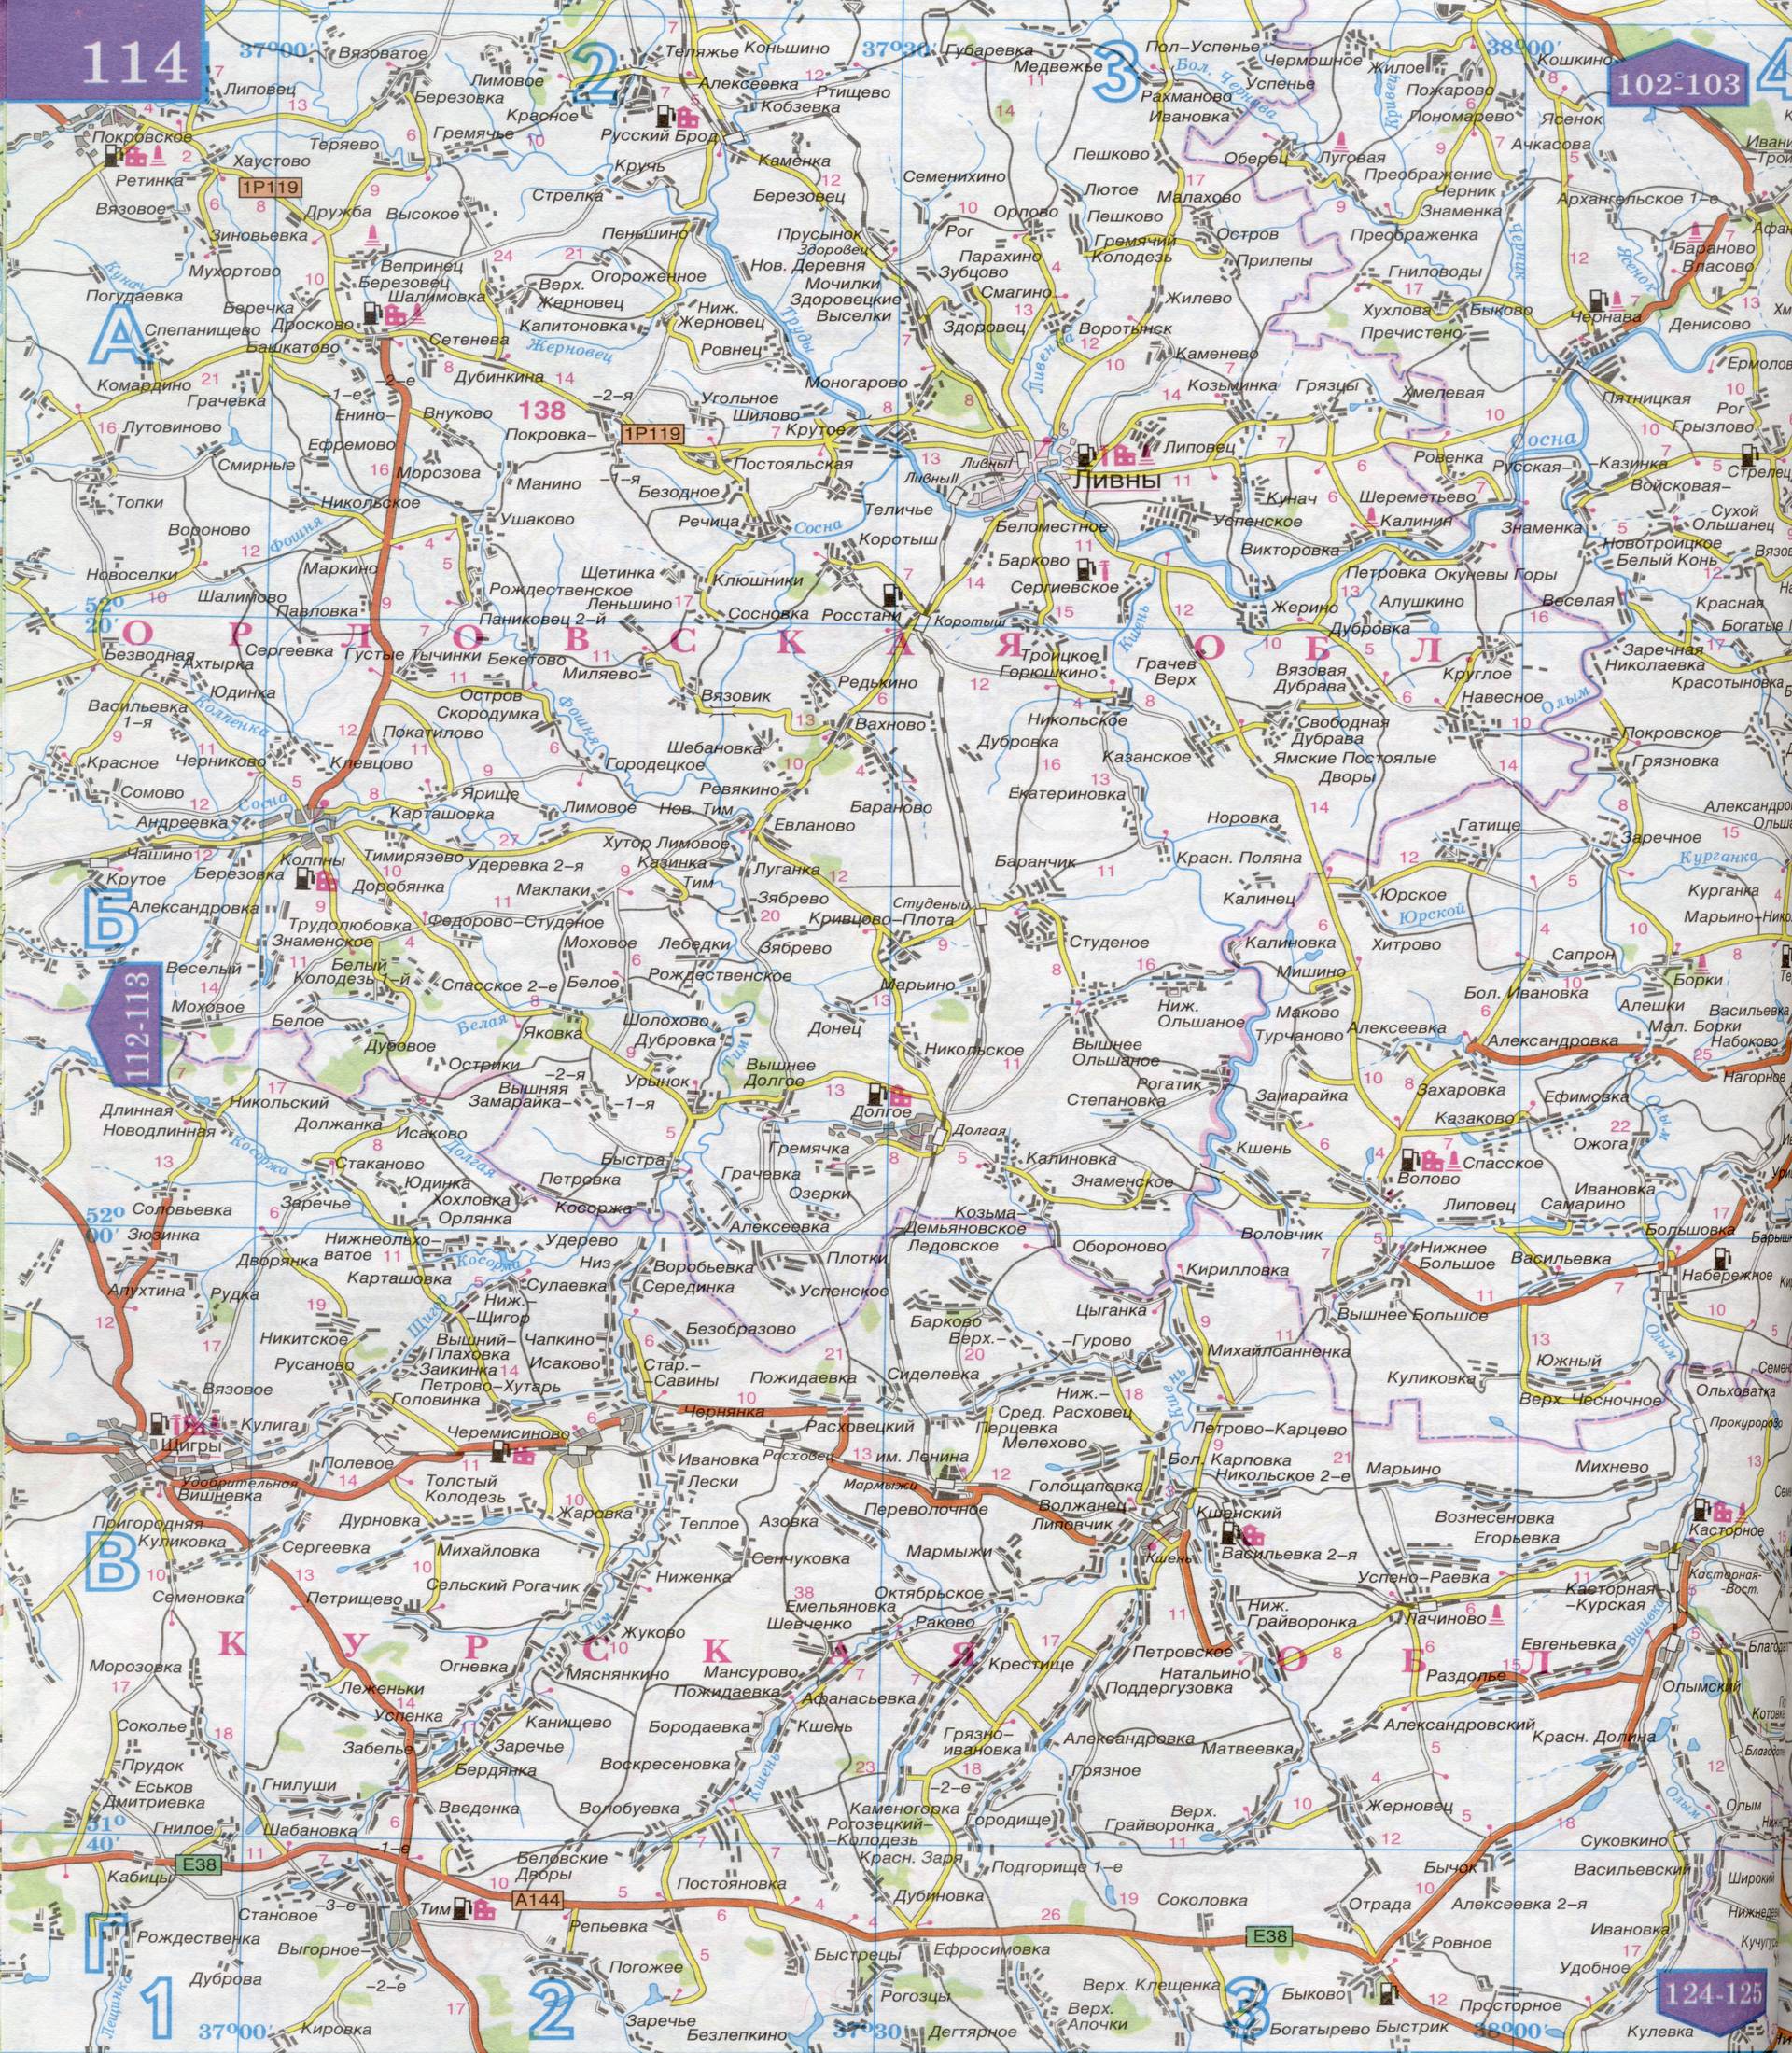 Карта Орловской области 1см:5км. Карта автомобильных дорог Орловской области, B1 - 